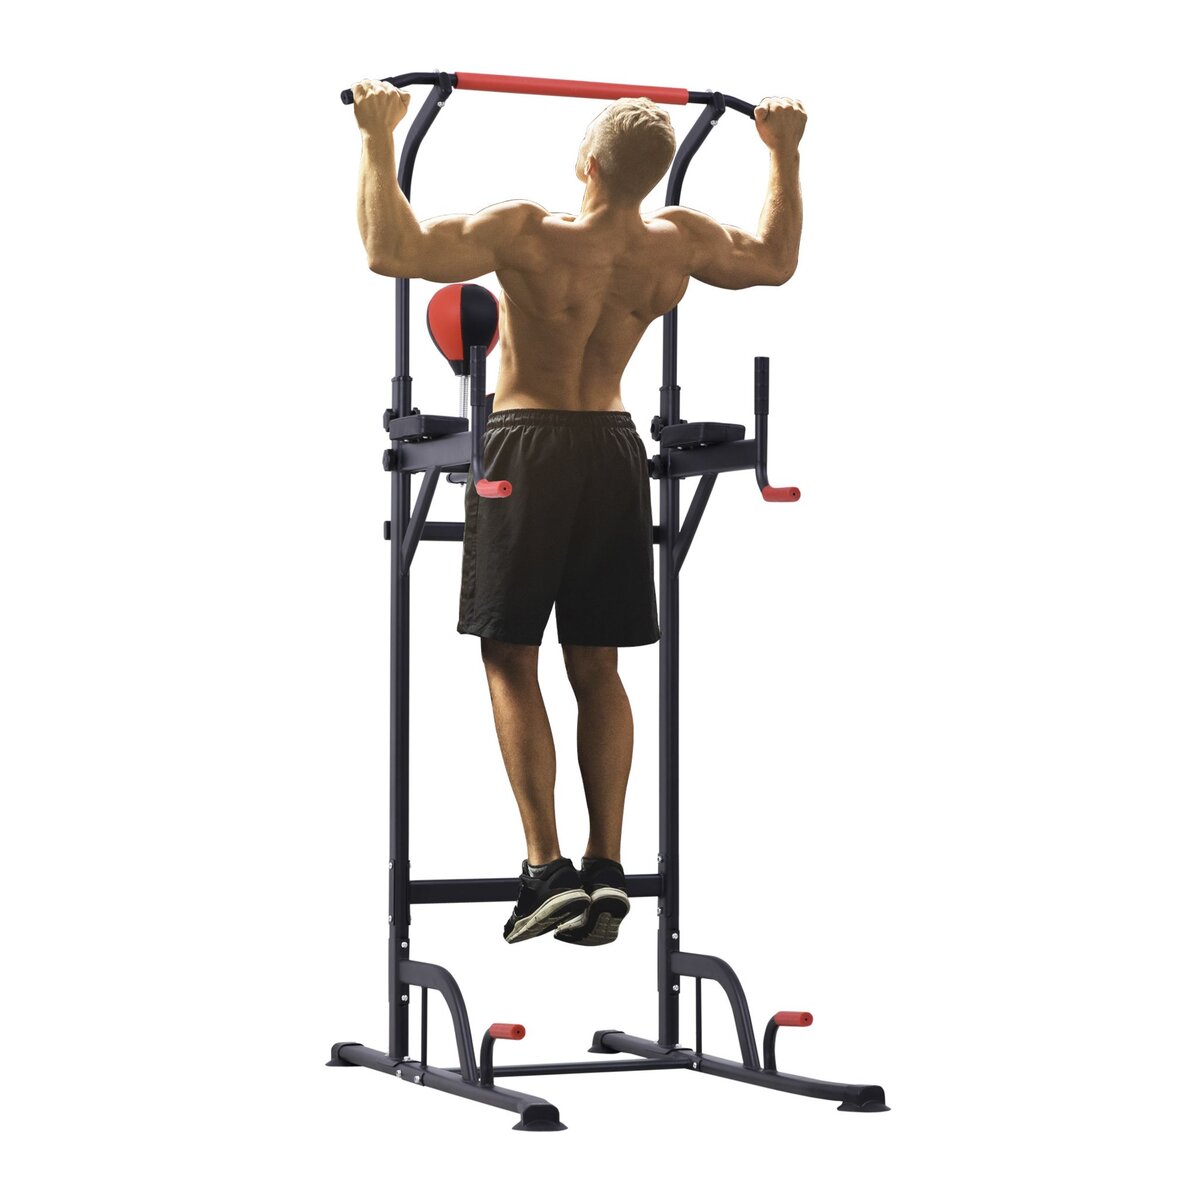 HOMCOM Station de musculation multifonctions barre de traction chaise  romaine hauteur réglable acier noir rouge pas cher 